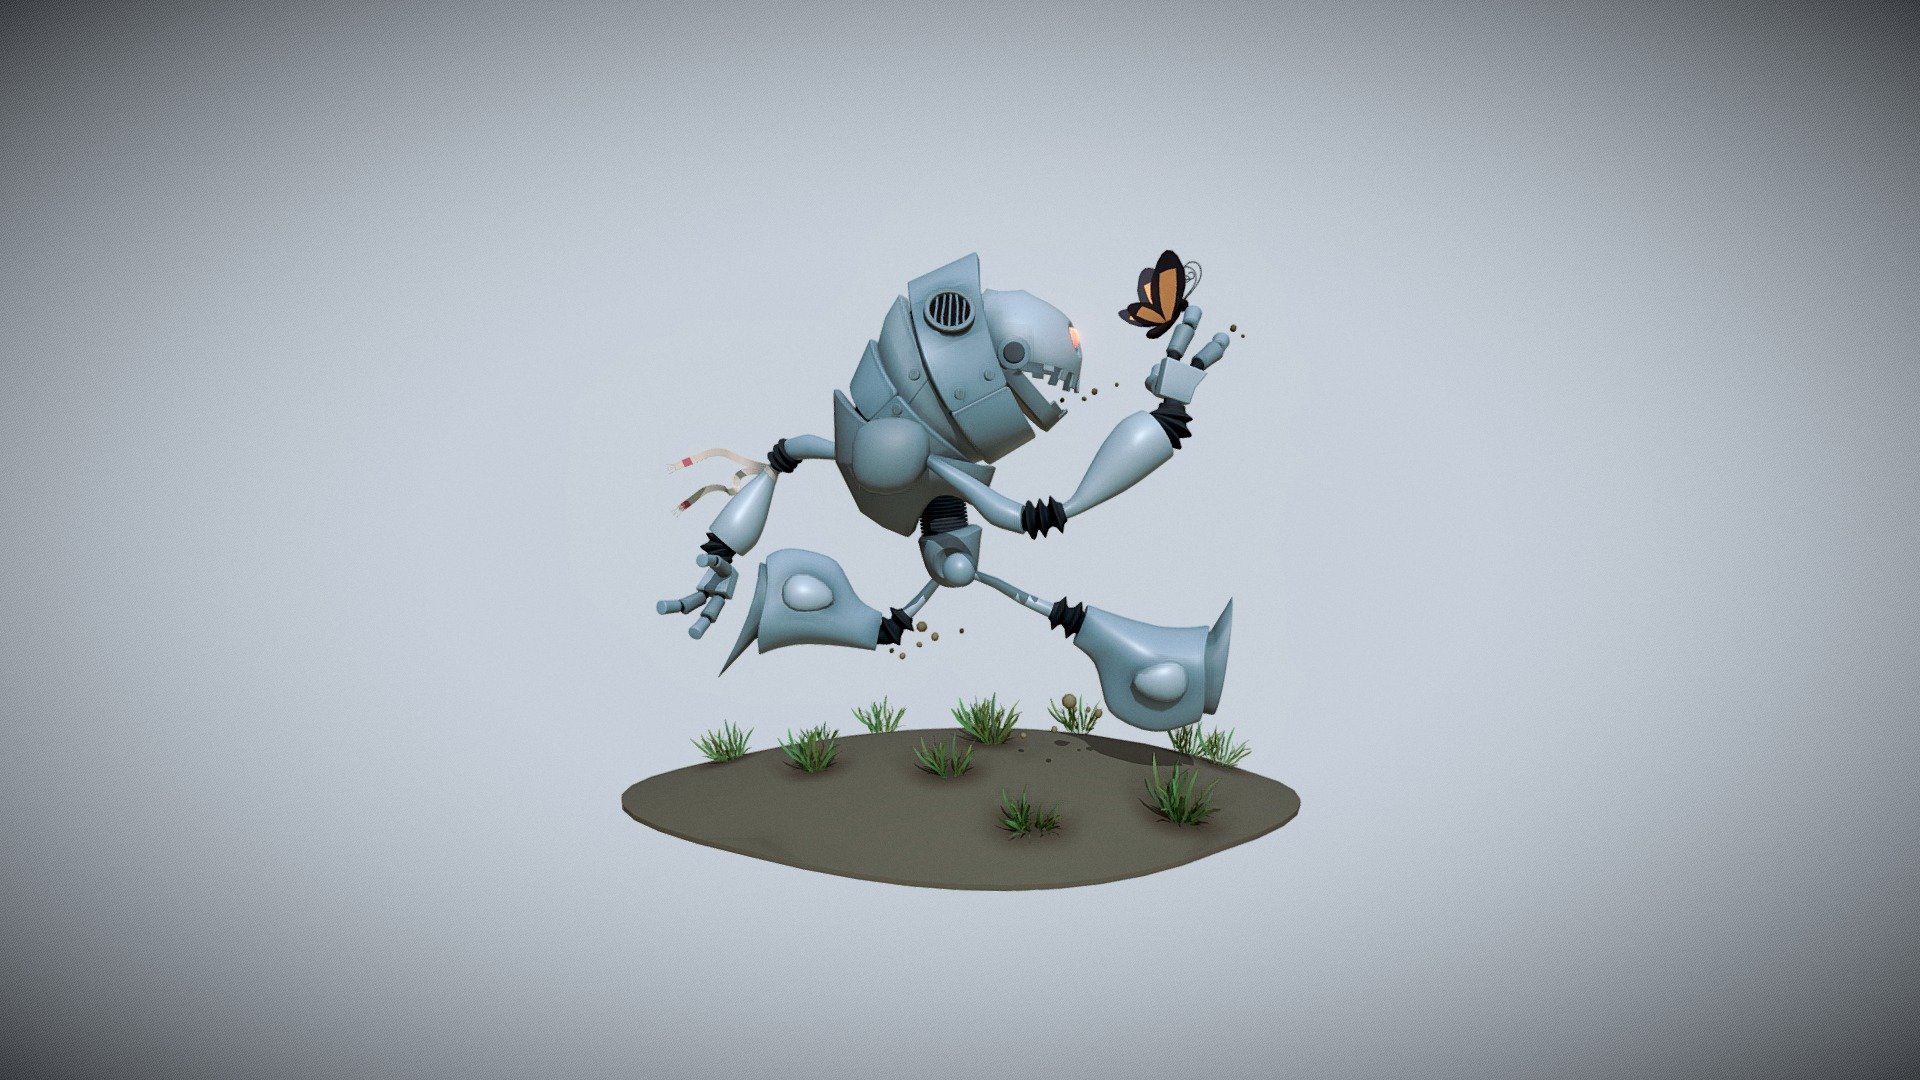 Robot_Bob - Download Free 3D model by Dmitry Siromaha (@Siromaha_Dmitry) 3d model